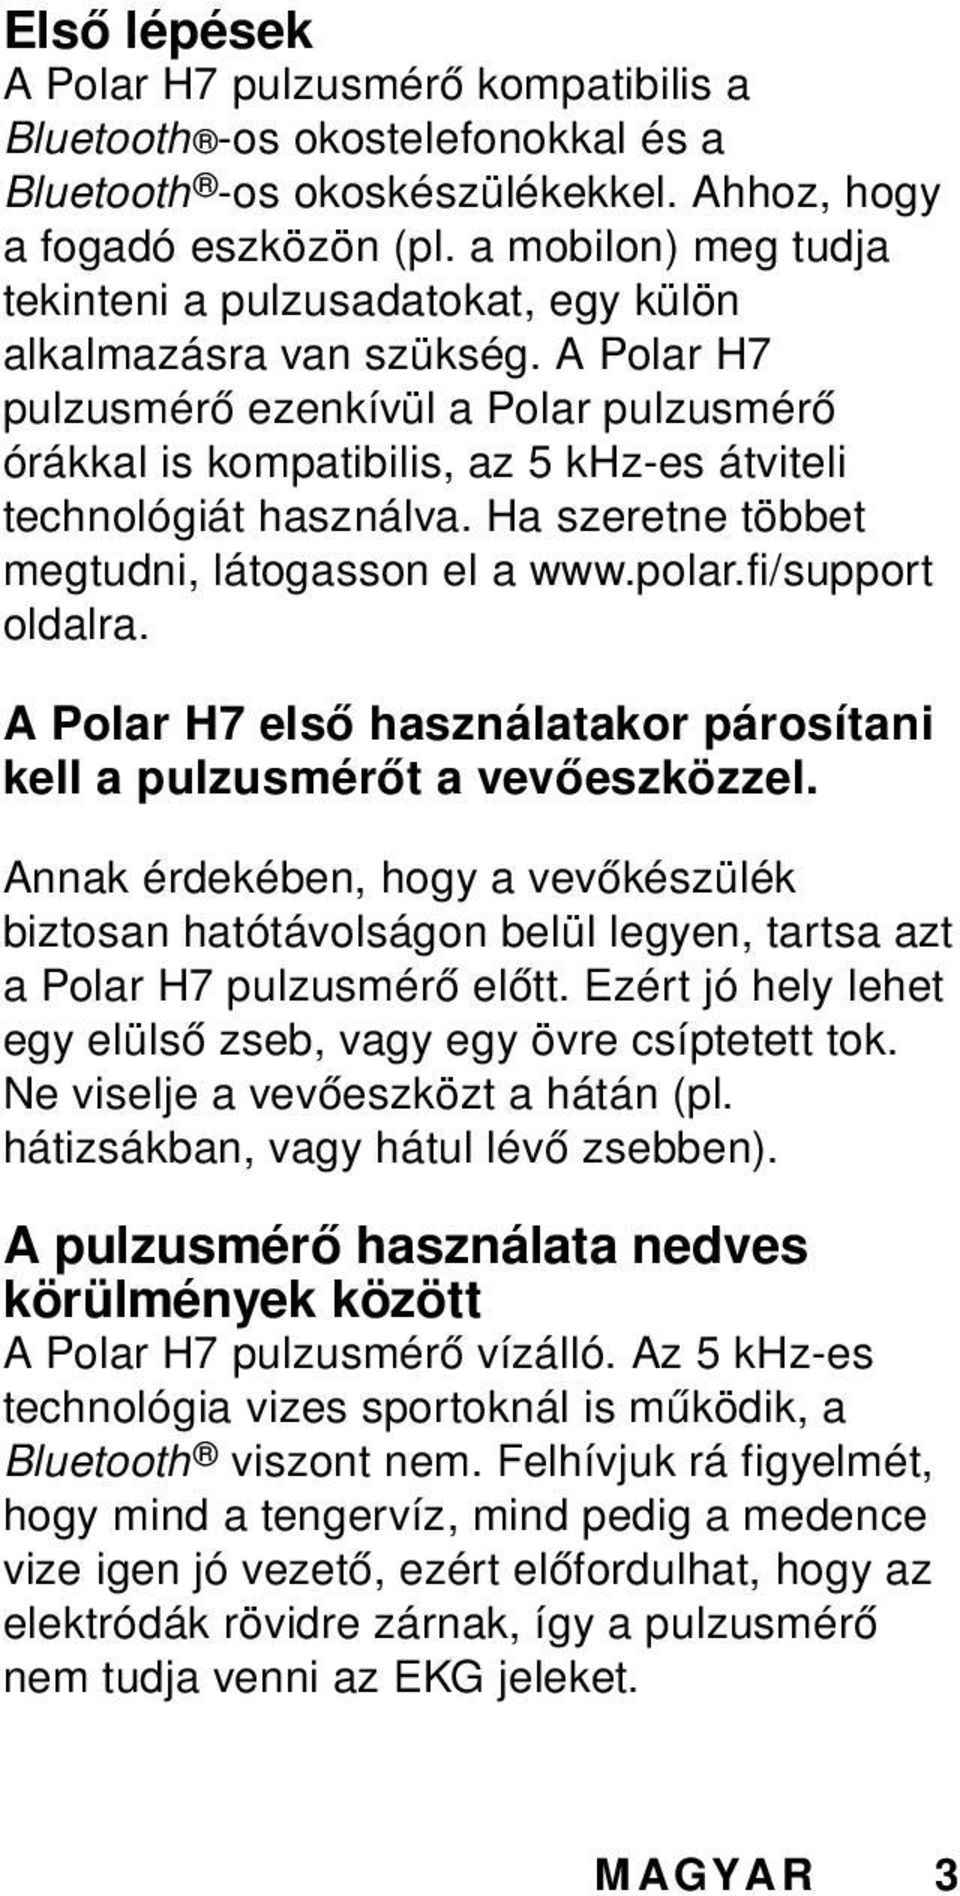 A Polar H7 pulzusmérő ezenkívül a Polar pulzusmérő órákkal is kompatibilis, az 5 khz-es átviteli technológiát használva. Ha szeretne többet megtudni, látogasson el a www.polar.fi/support oldalra.